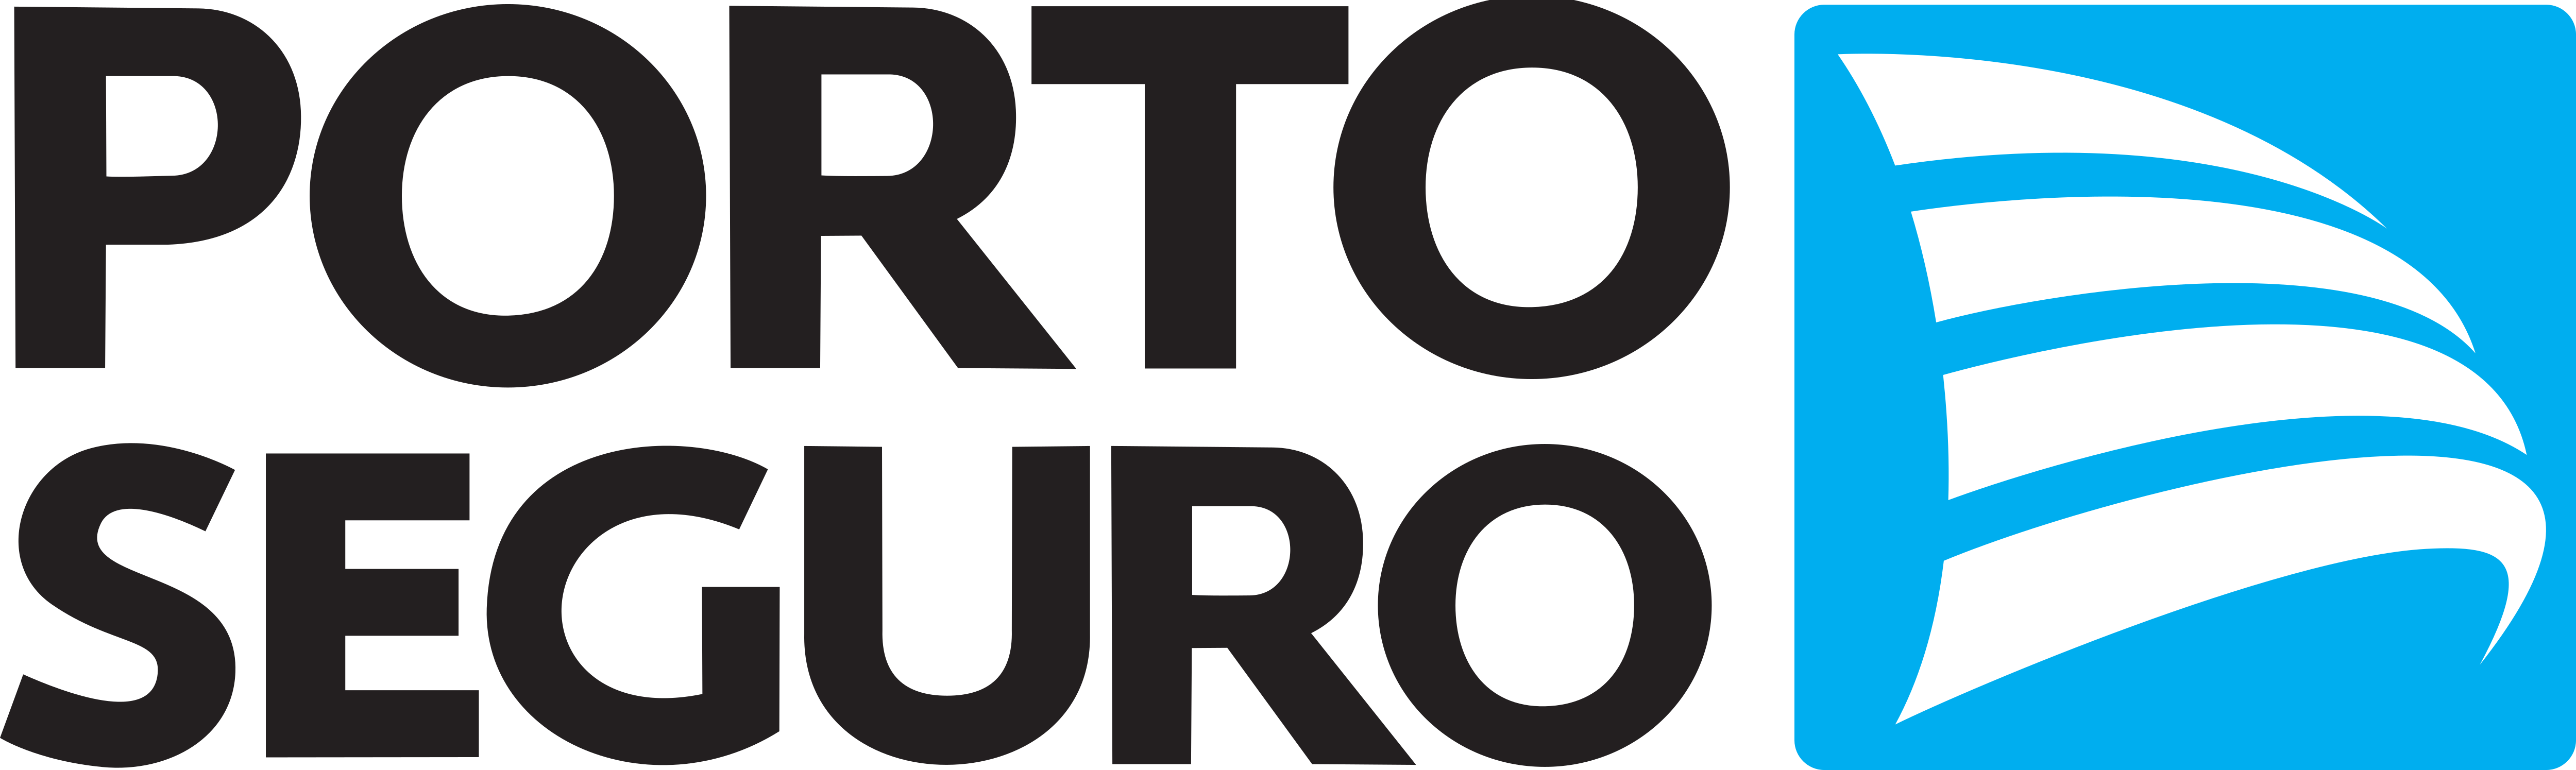 Porto Seguro Logo.